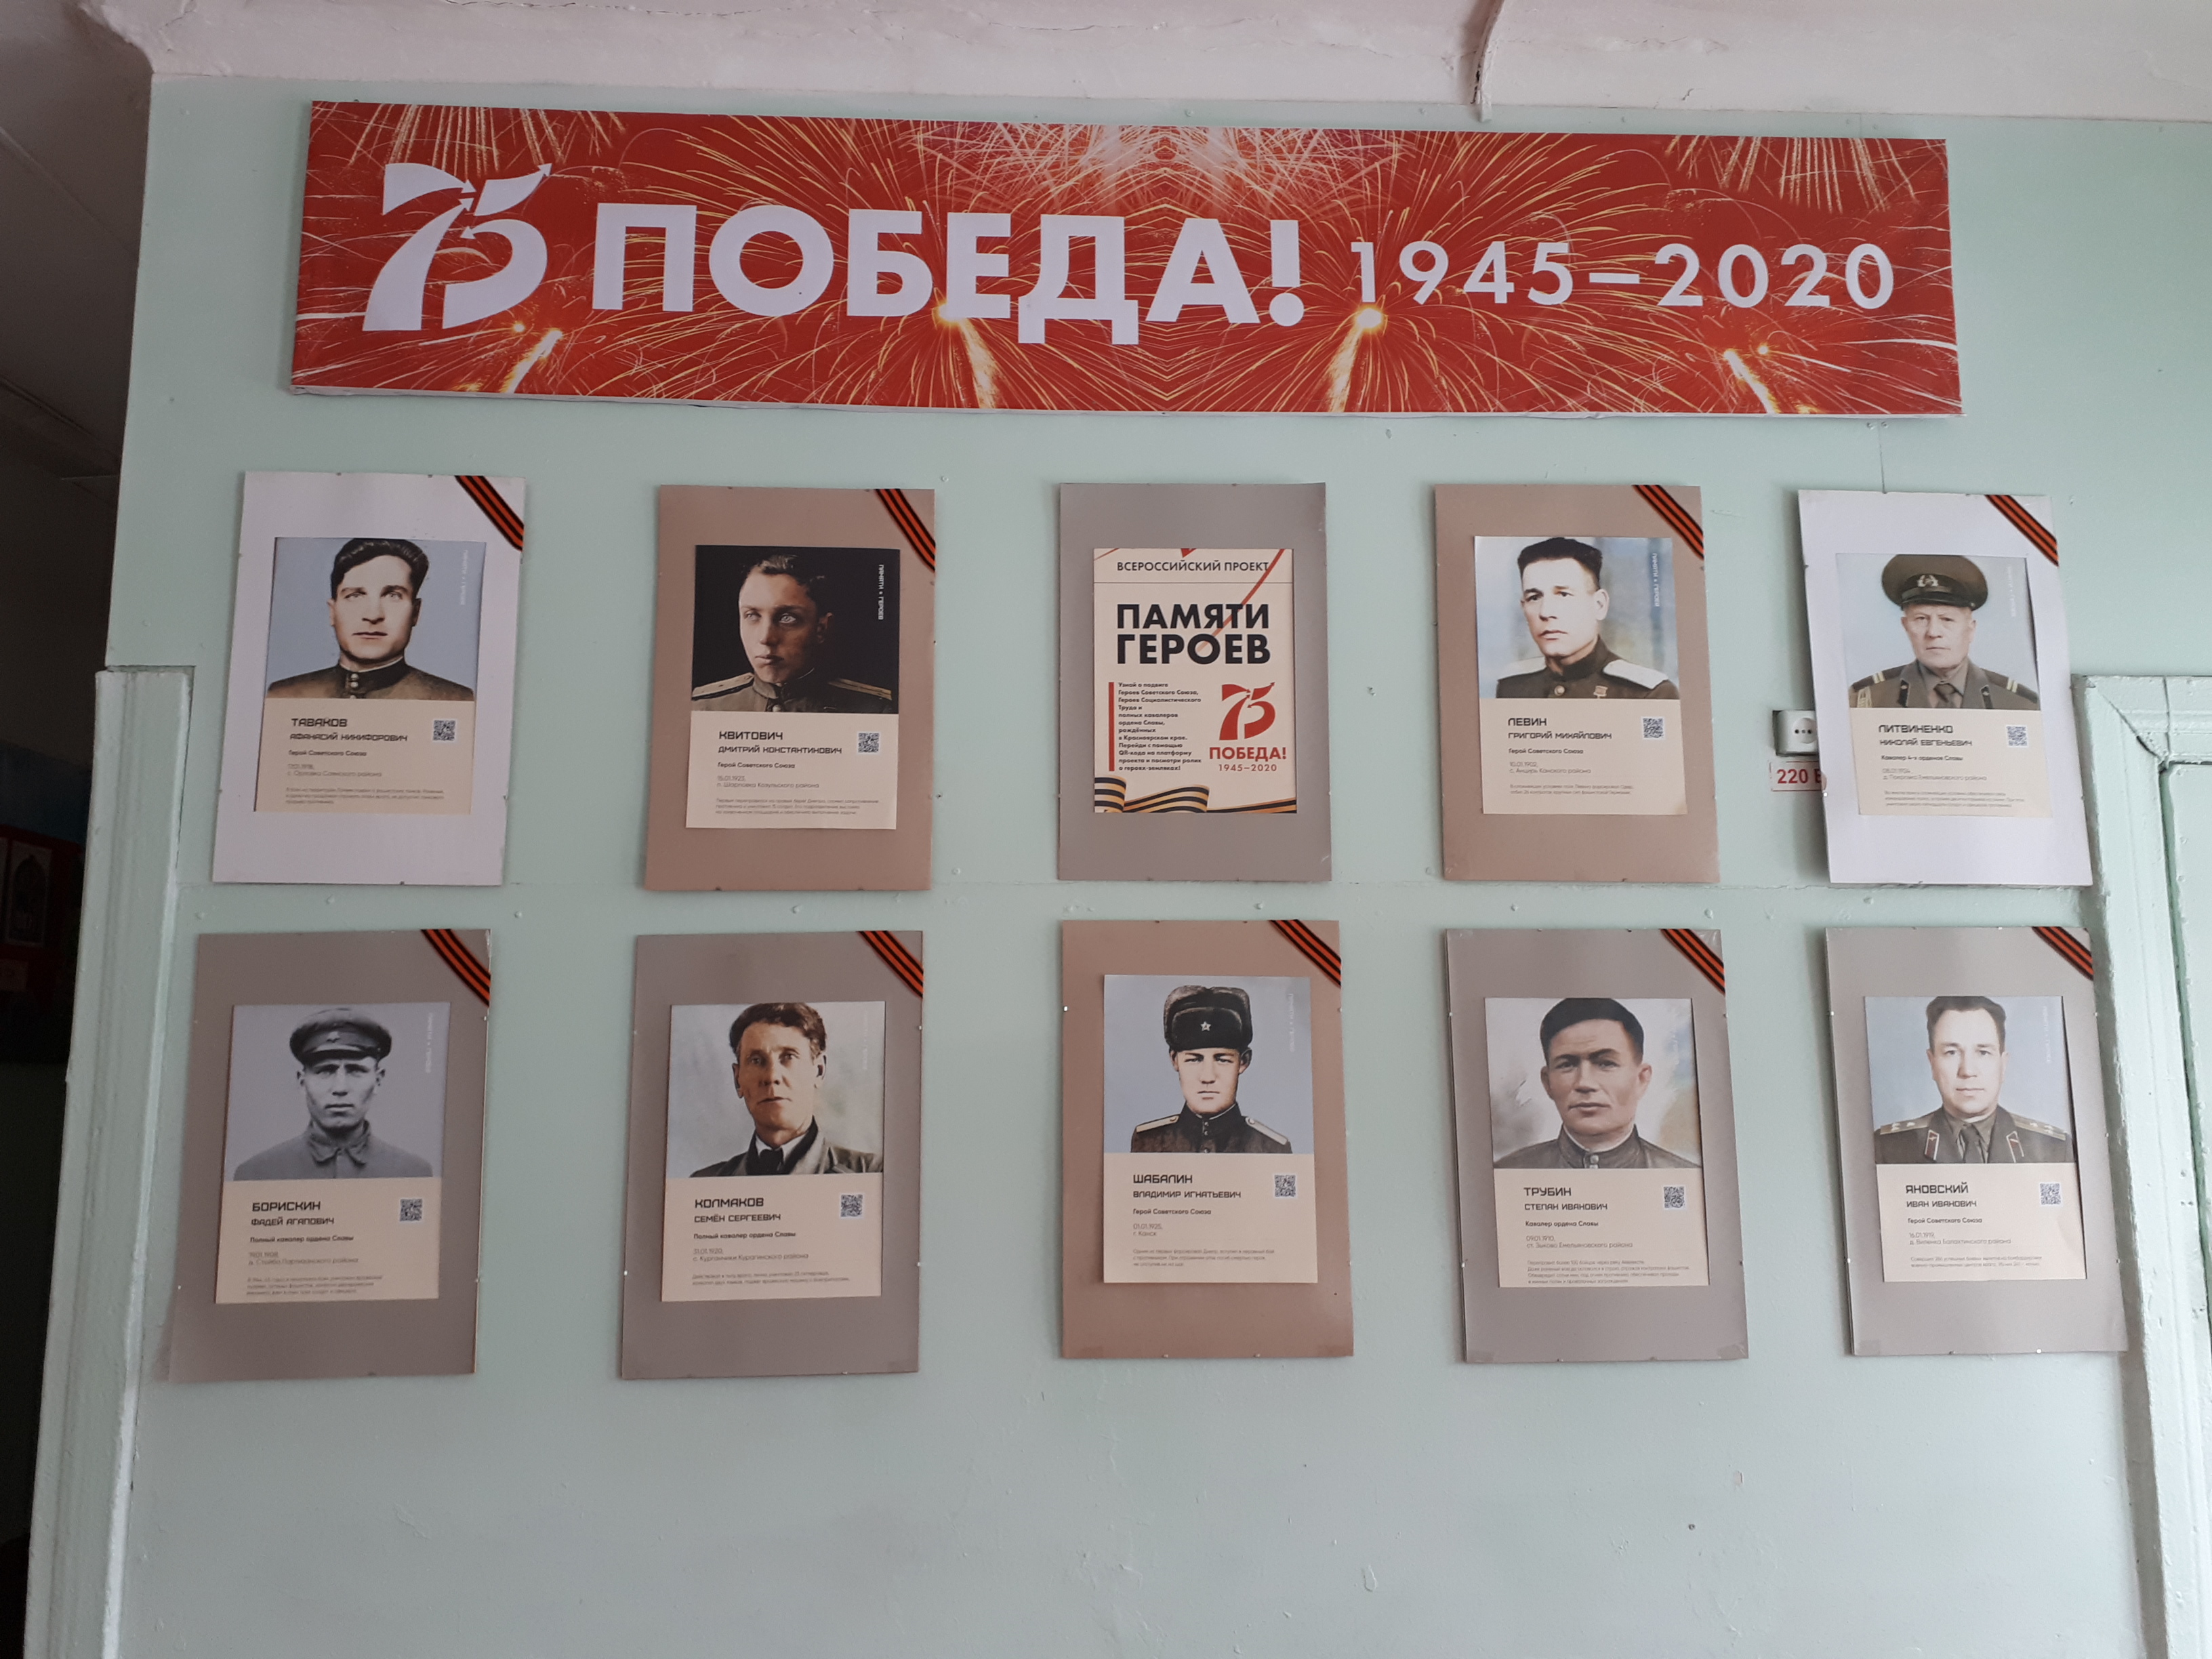 Всероссийский проект памяти героев 2020. Всероссийский проект памяти героев. Проект книга памяти. Проект памяти героев